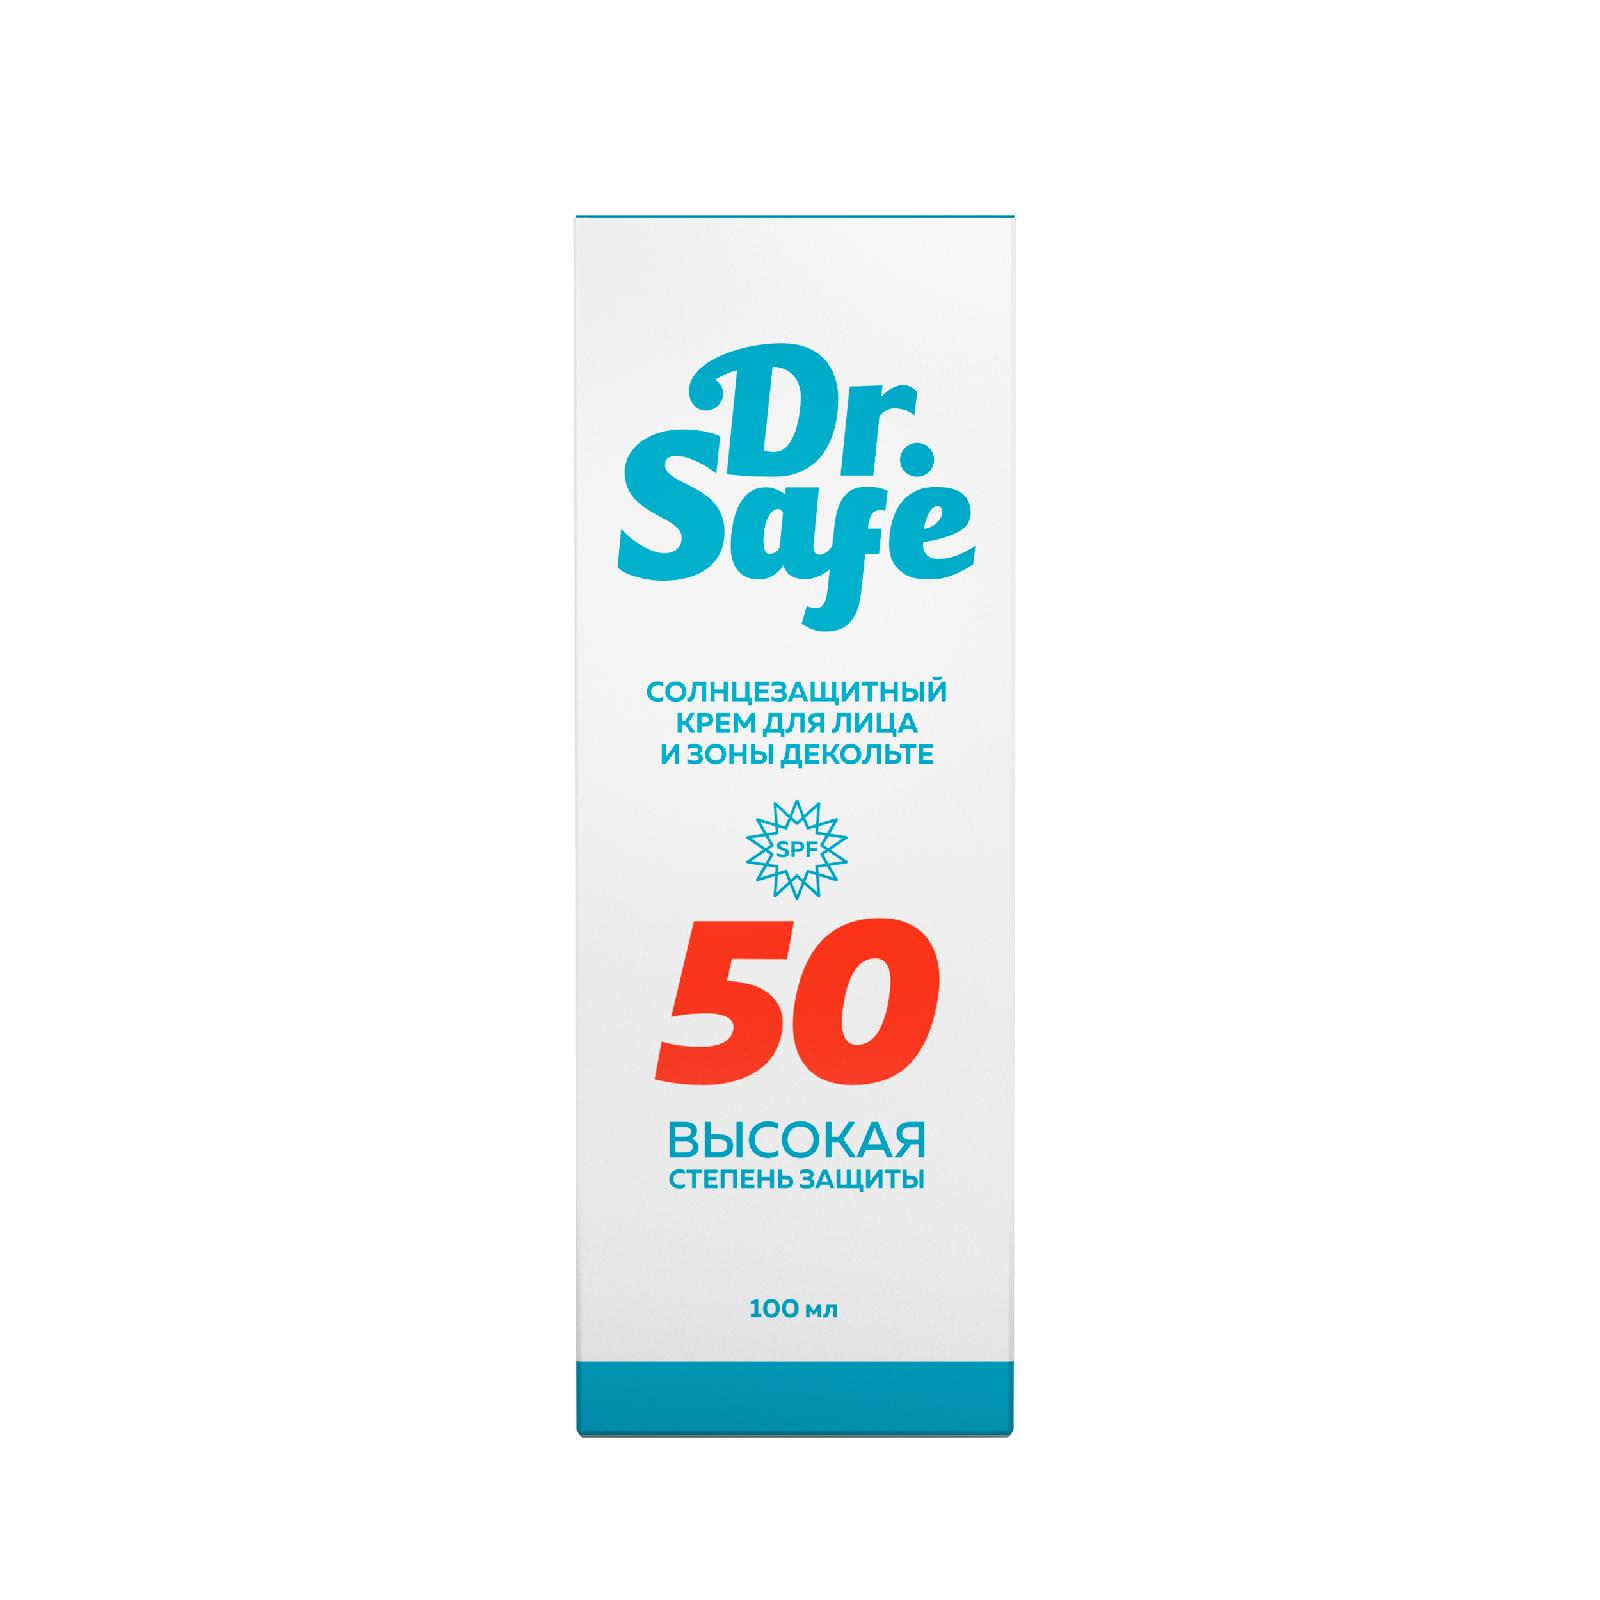 Солнцезащитный крем для лица DR.SAFE 50 SPF, 100 мл institut esthederm солнцезащитный крем no sun с ультравысокой степенью защиты 50